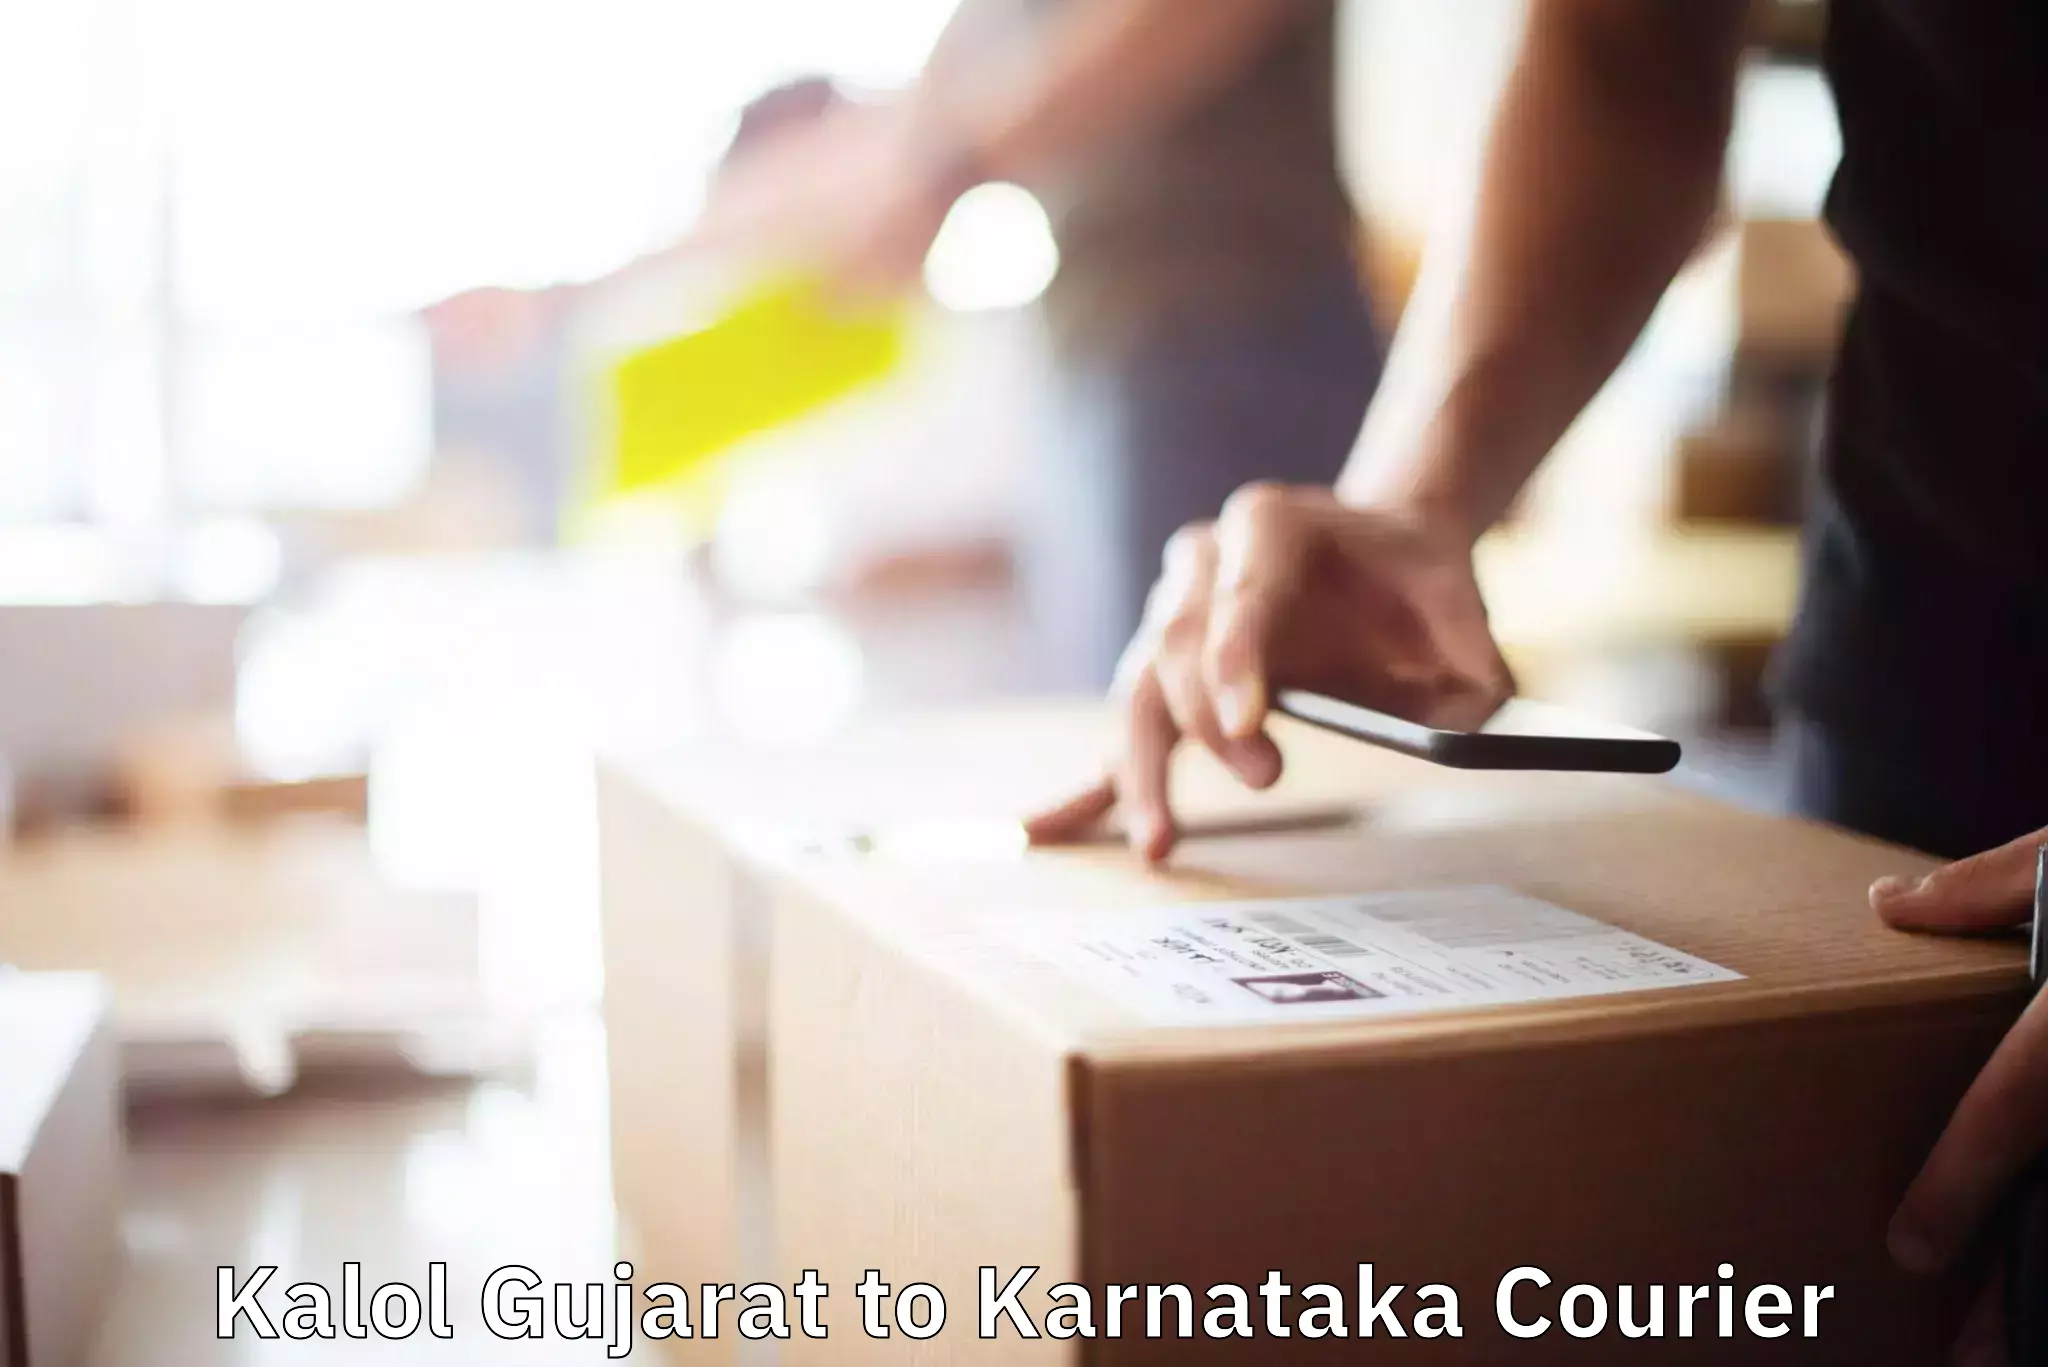 Furniture moving assistance Kalol Gujarat to Karnataka